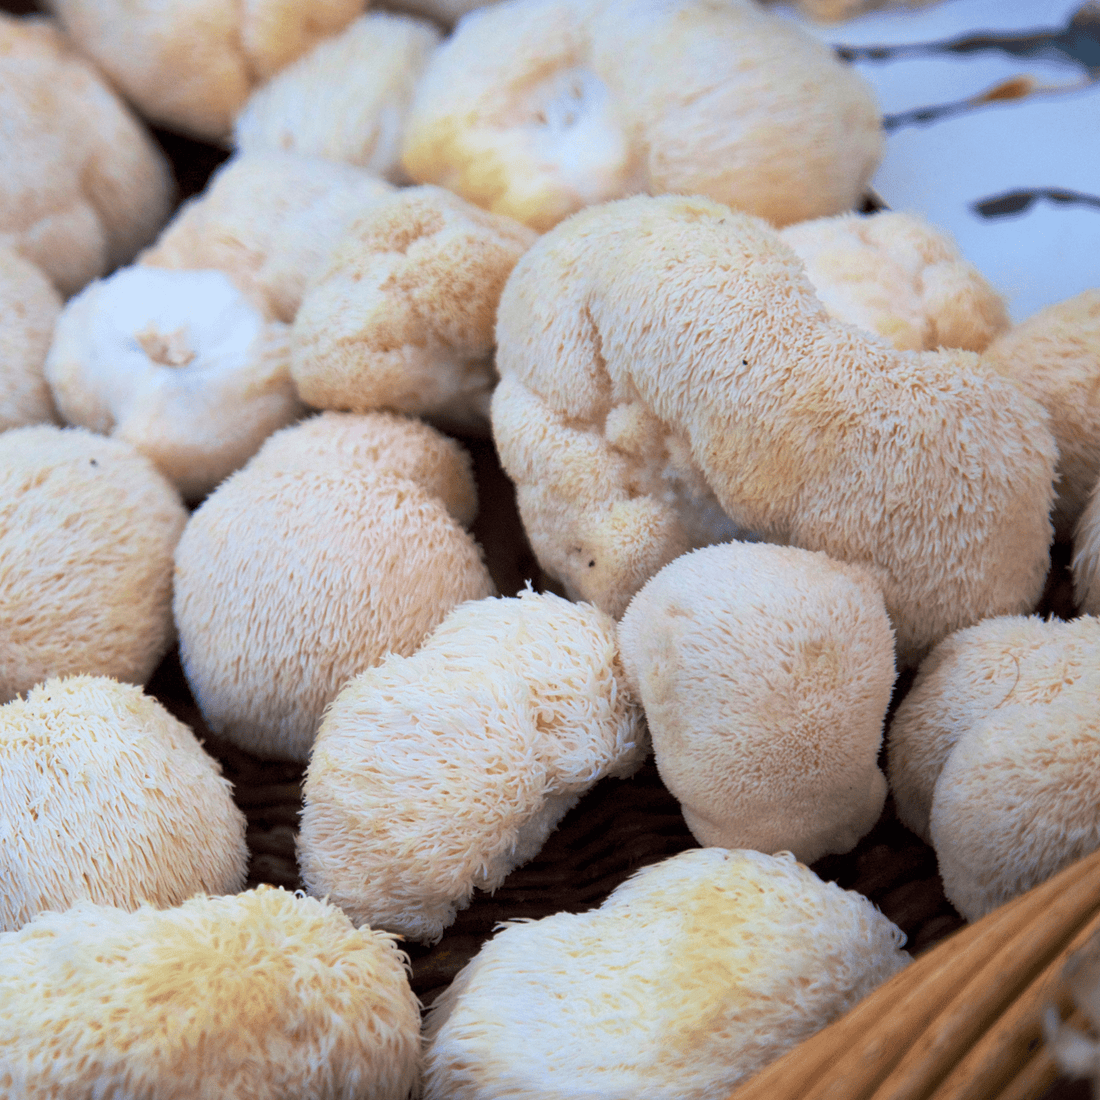 Lion's Mane mushrooms in a basket